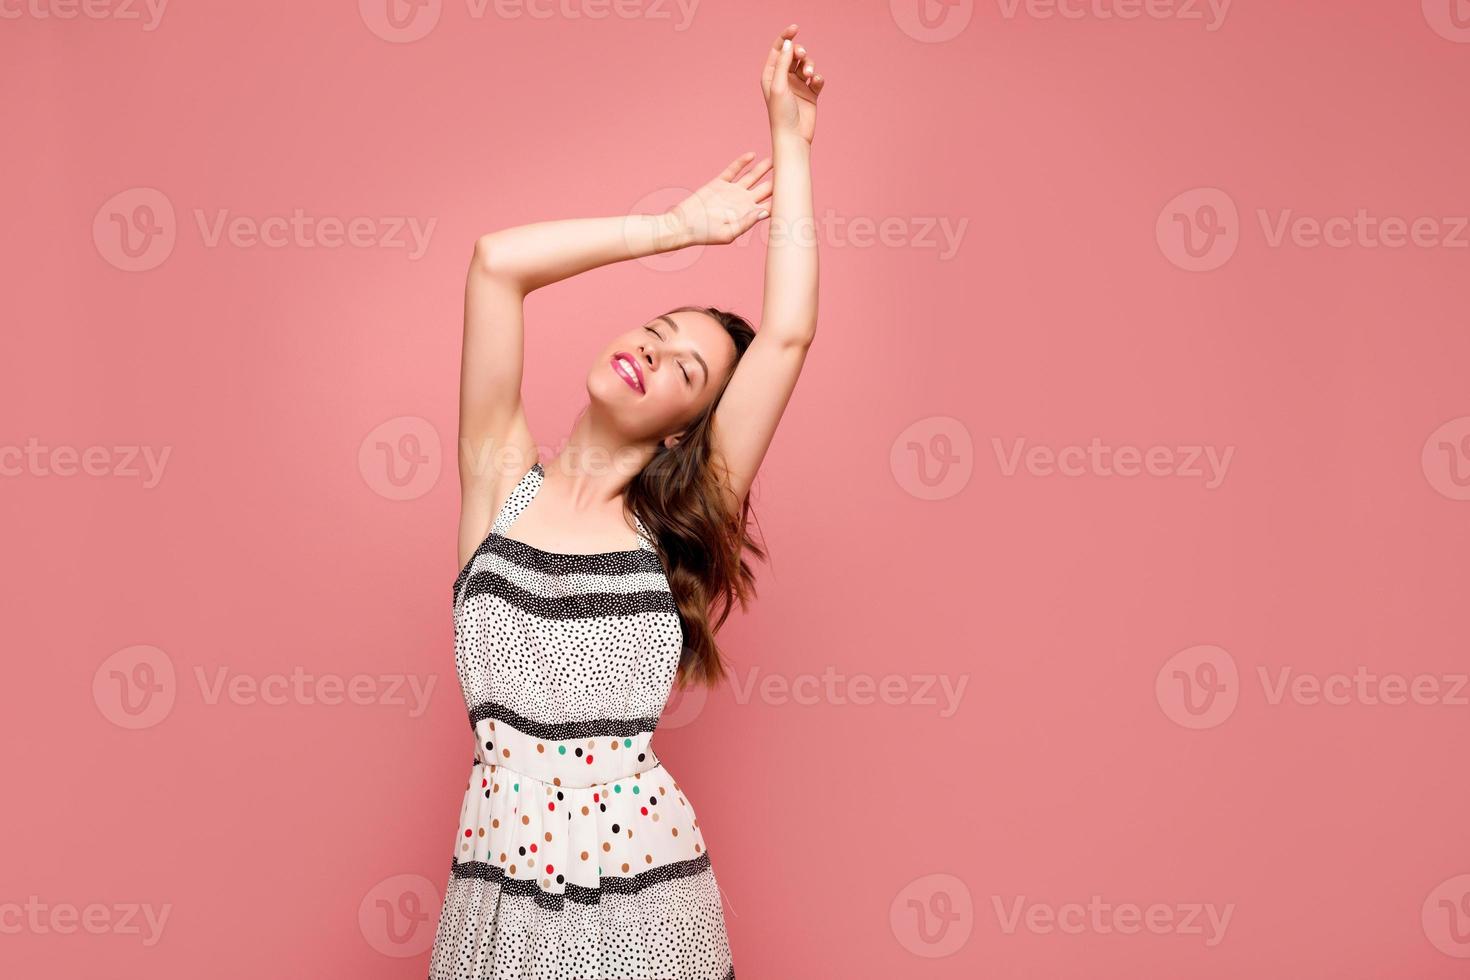 Attraktive, stilvolle junge Frau mit romantischem Lächeln und geschlossenen Augen, die Hände hochhalten und während des Fotoshootings auf rosafarbenem Hintergrund in die Kamera posieren foto